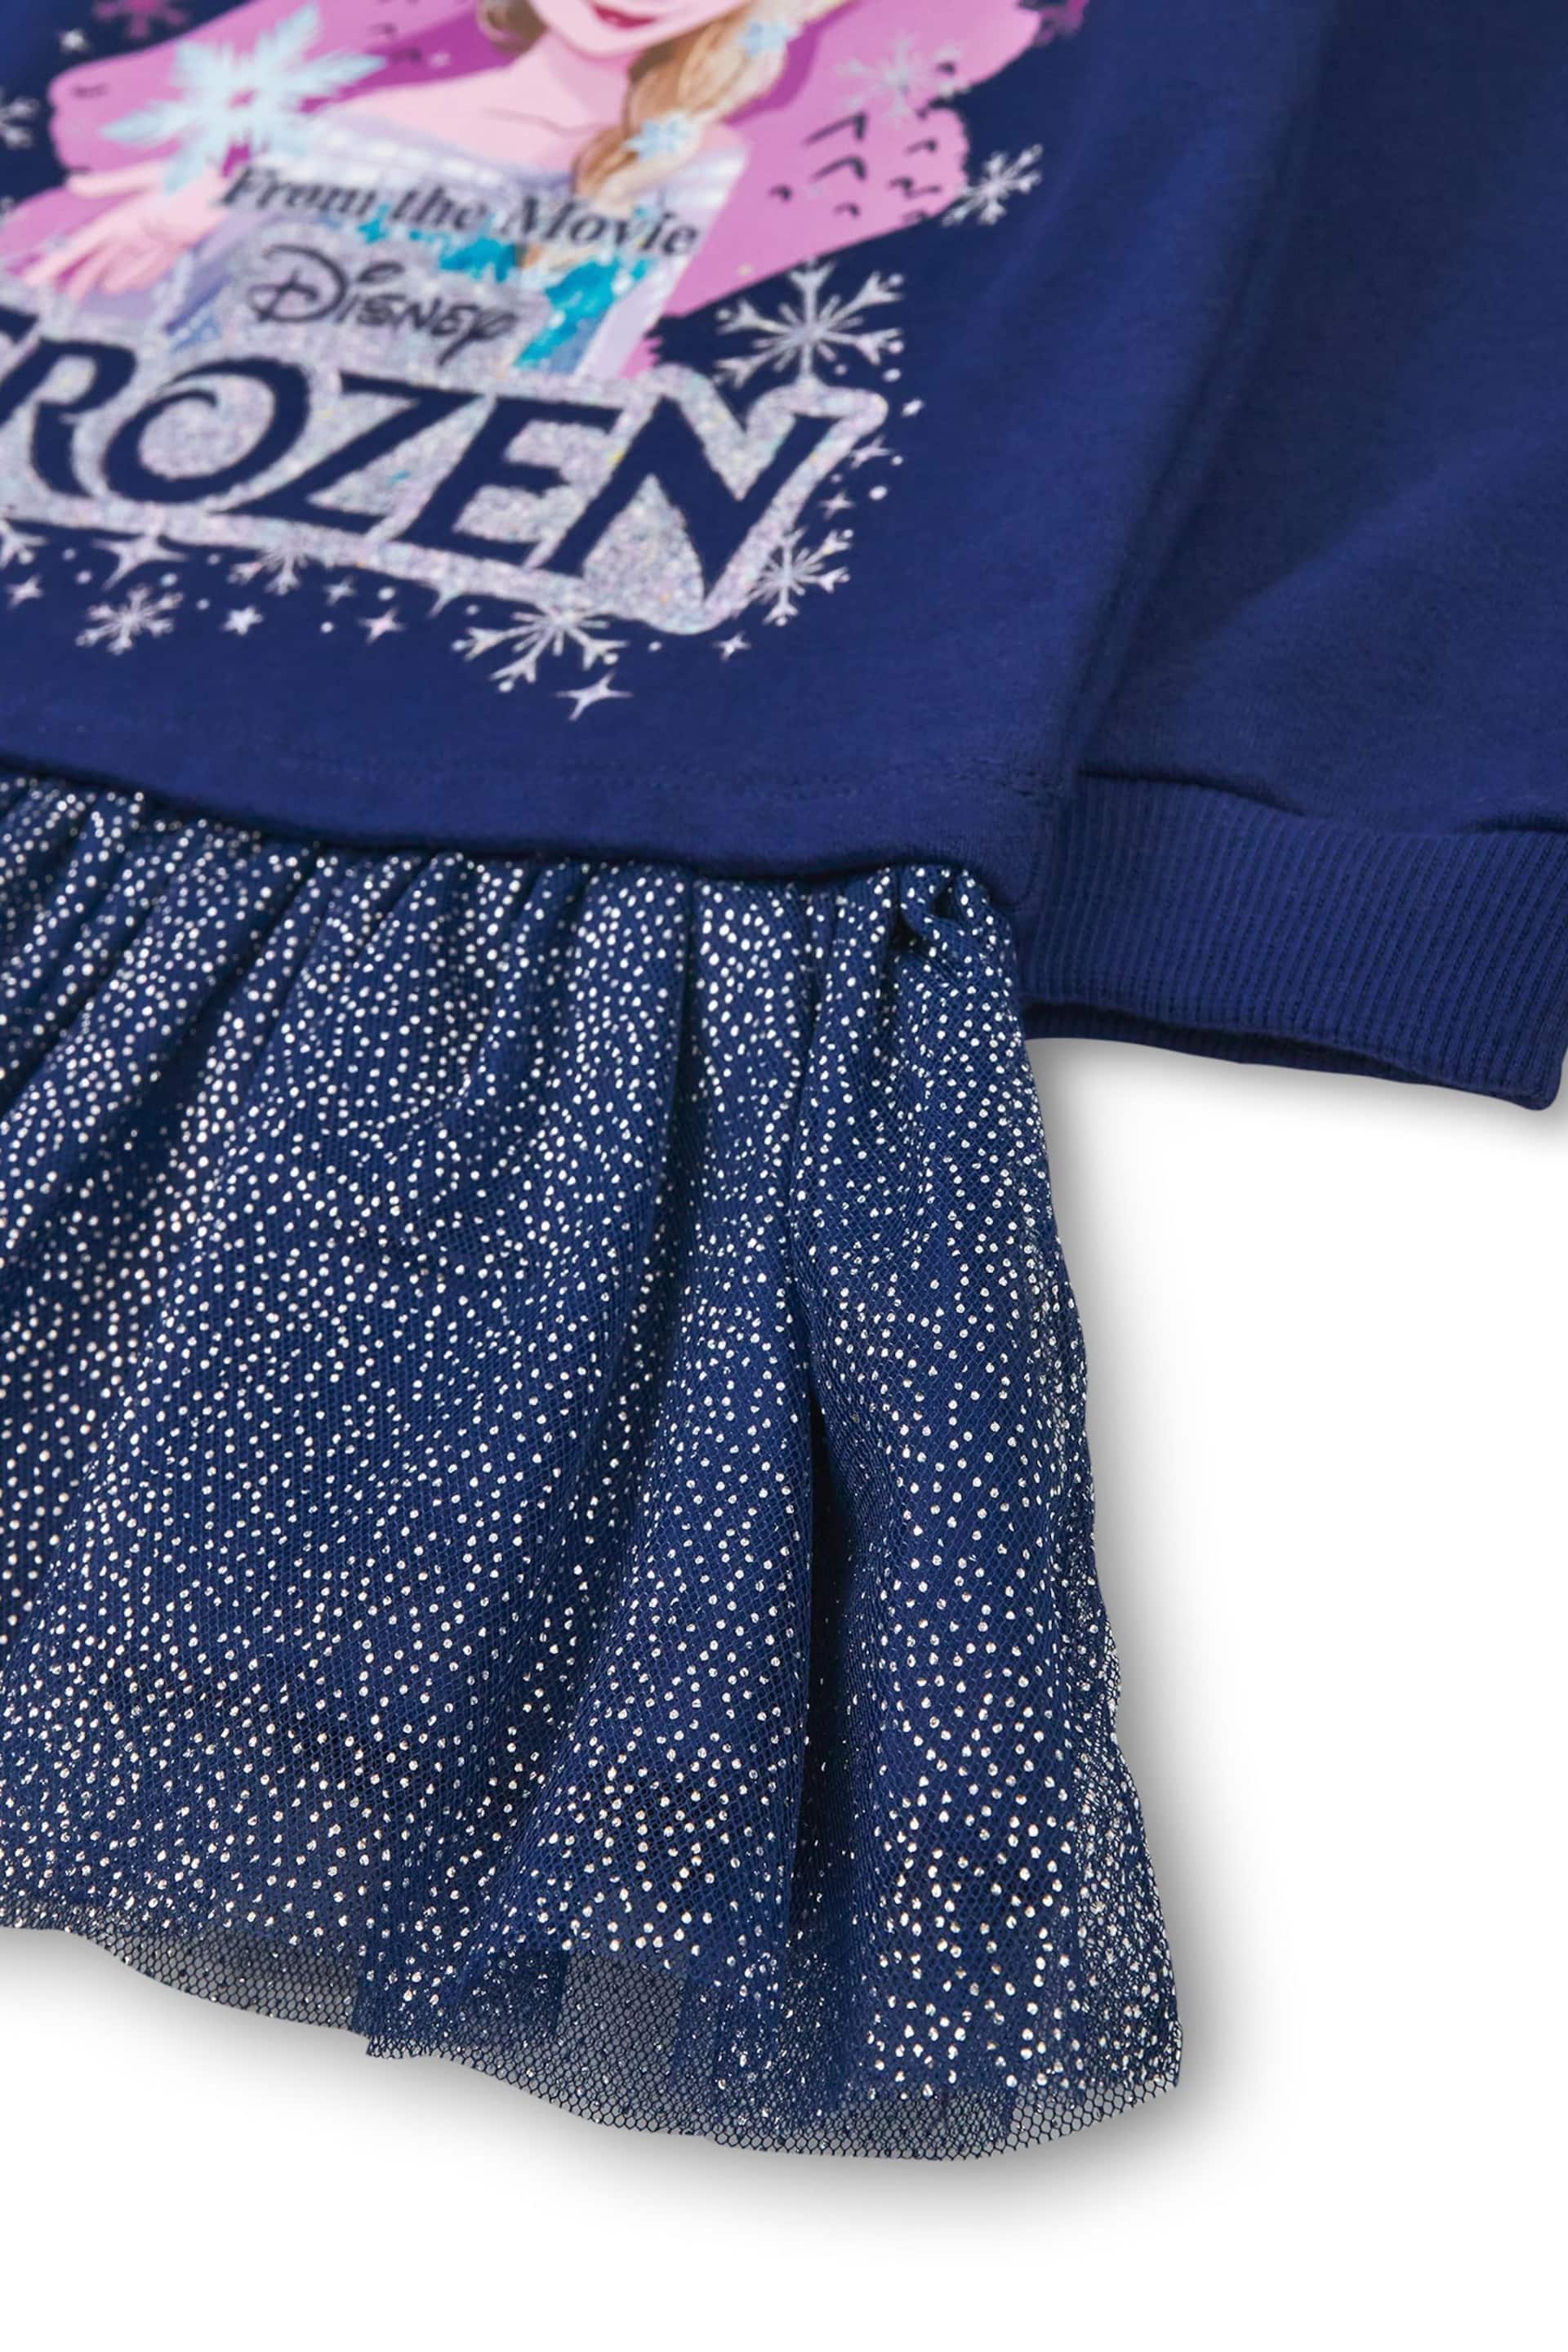 Vanilla Underground Blue Girls Frozen Longline Sweatshirt With Trim - Image 4 of 6